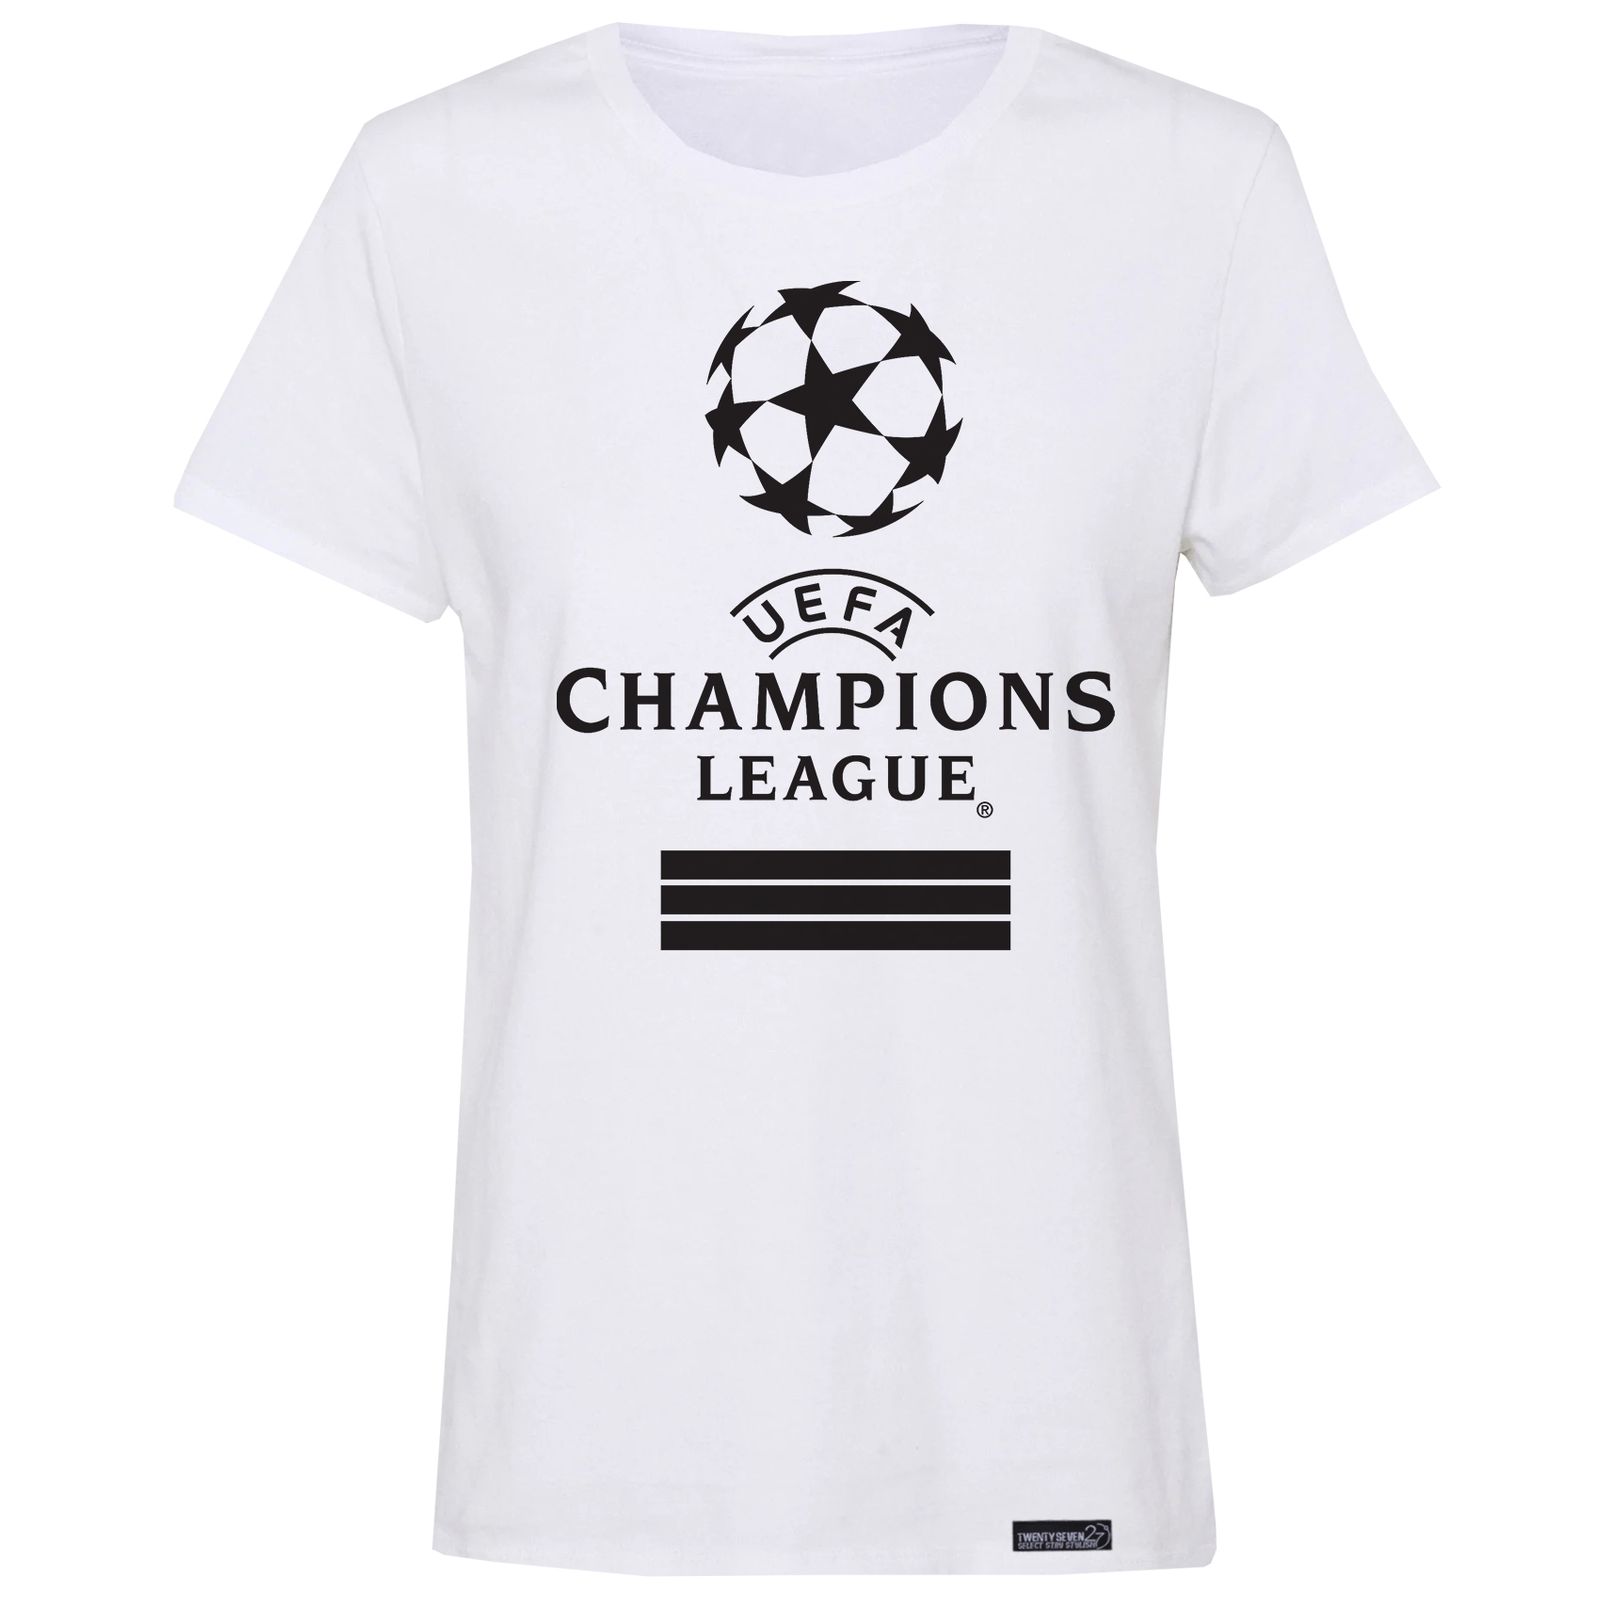 تی شرت آستین کوتاه زنانه 27 مدل Champions League کد MH25 -  - 3